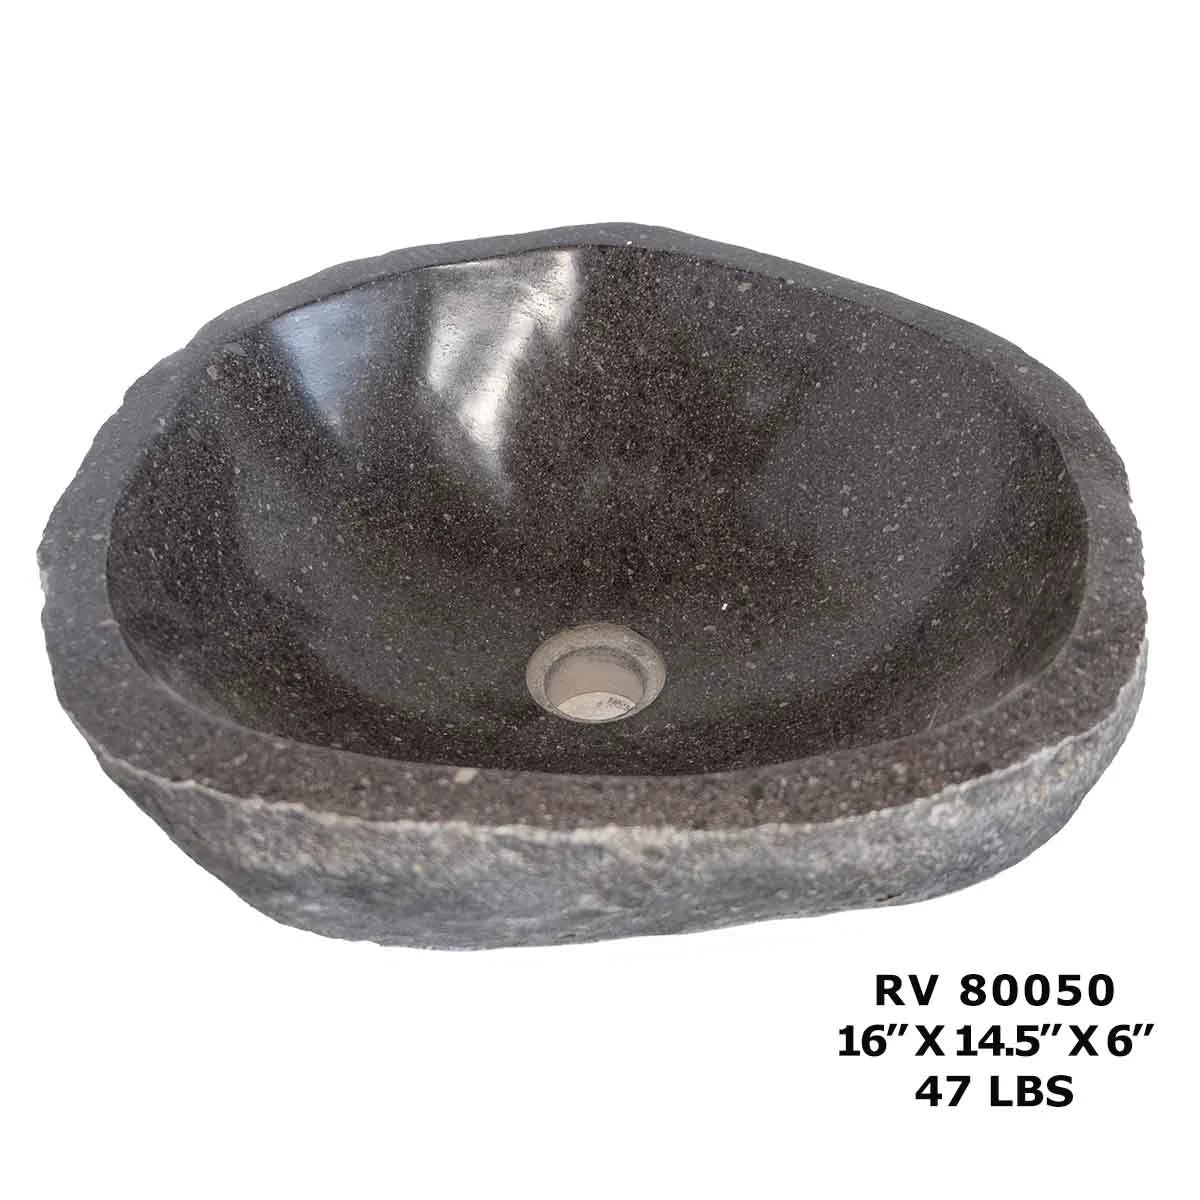 RV80050-River Stone Oval Sink - Wash Basin Sink for Bathroom